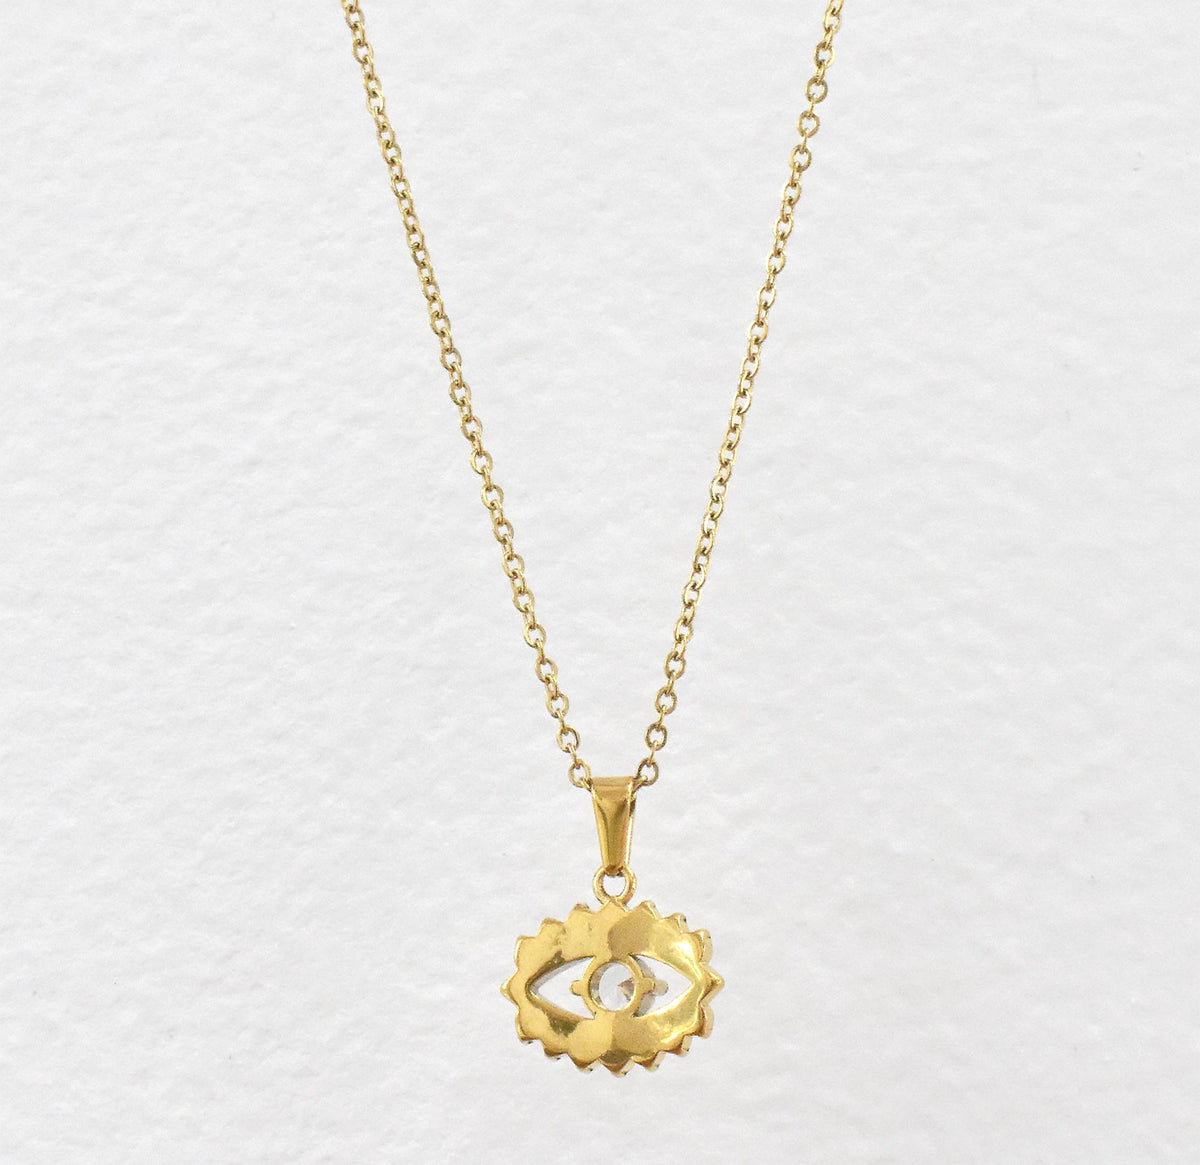 evil eye necklace gold waterproof jewelry